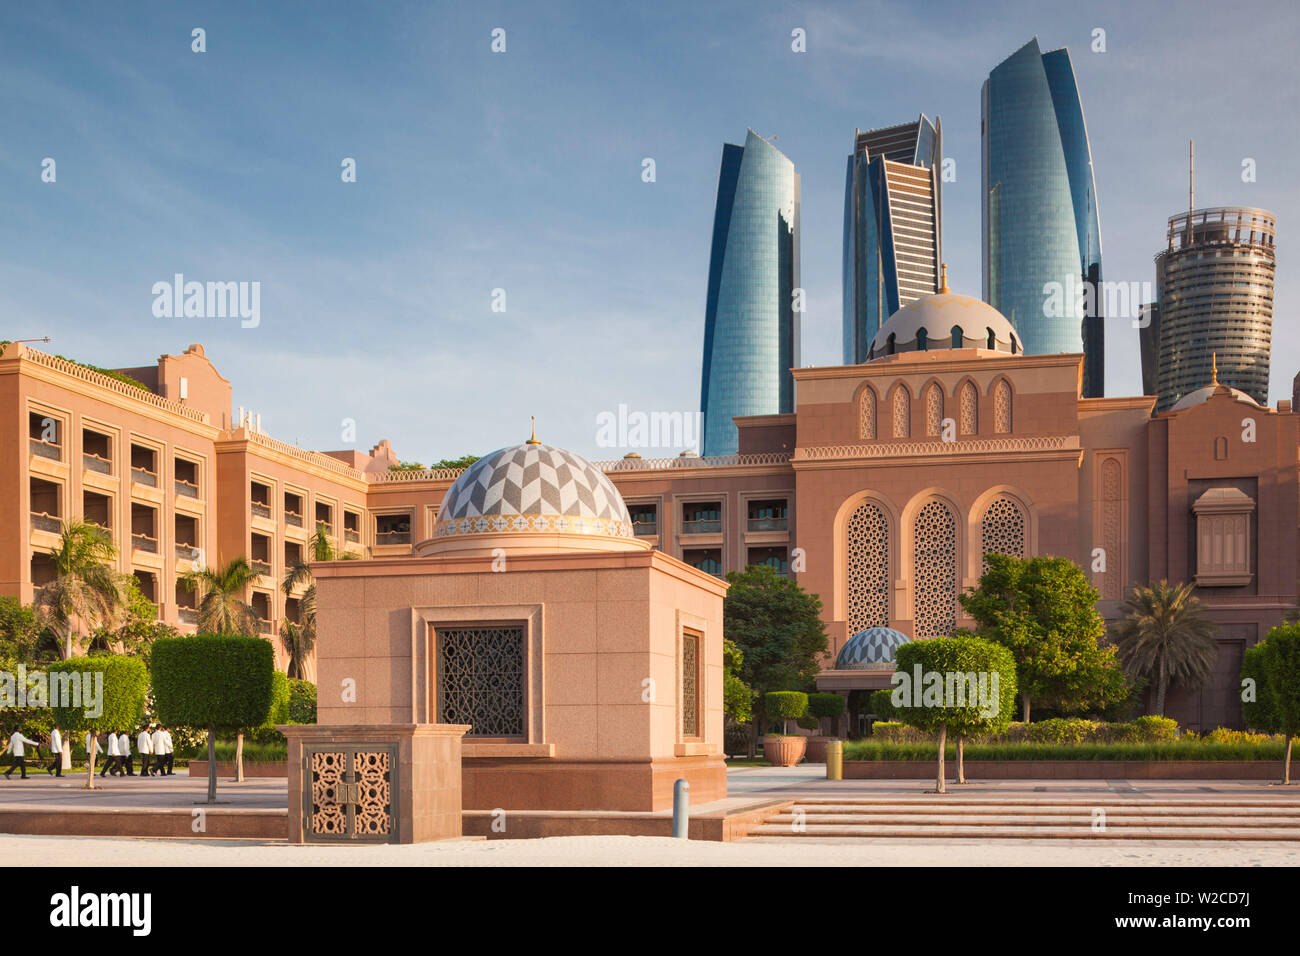 UAE, Abu Dhabi, Emirates Palace Hotel and Etihad Towers Stock Photo